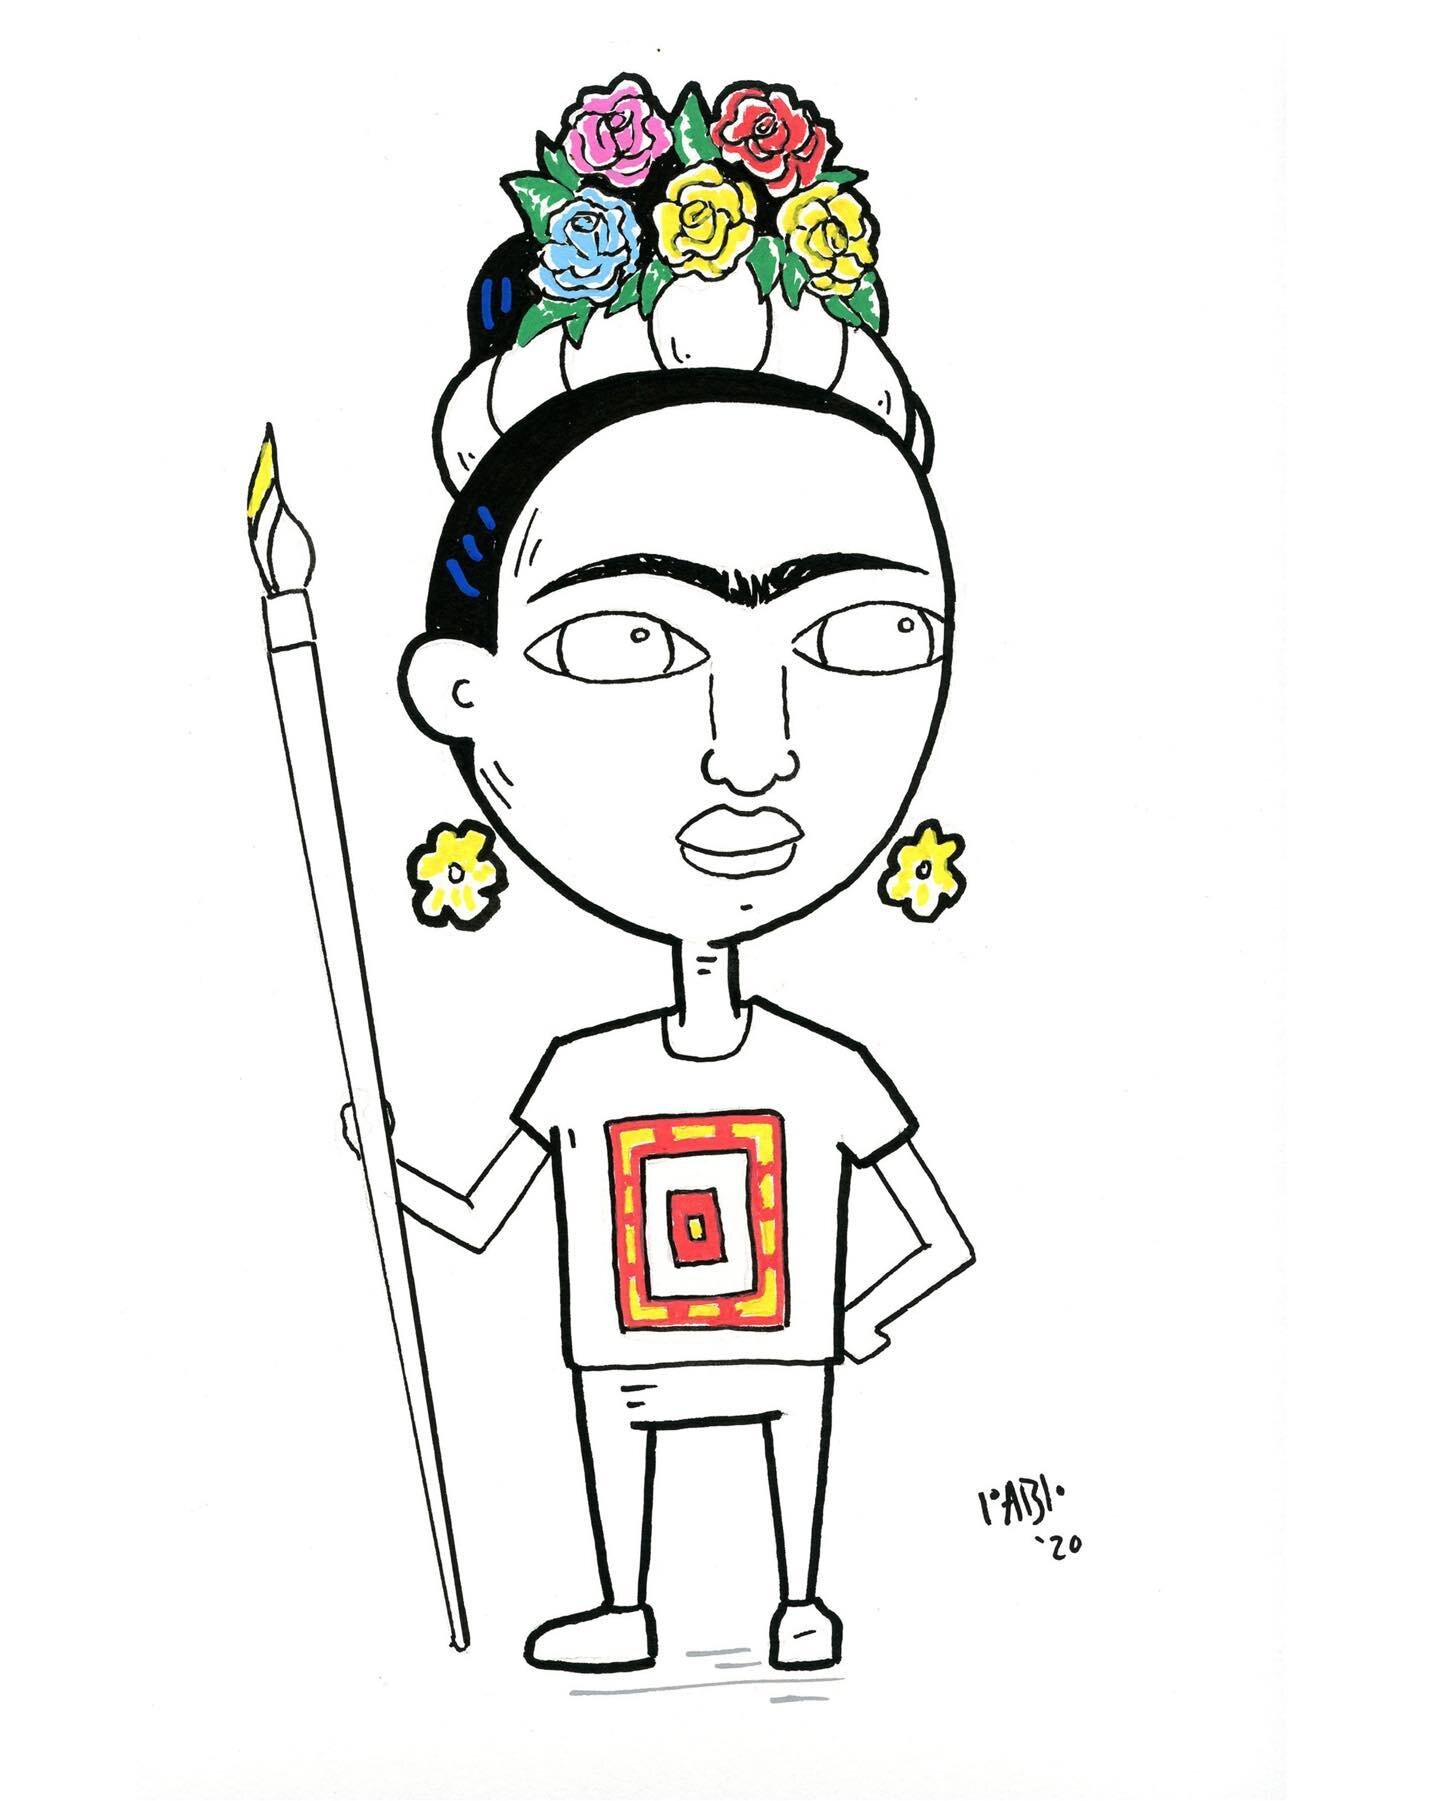 Frida Kahlo caricature hand drawn with acrylic pens #frida kahlo #latino art #illustration